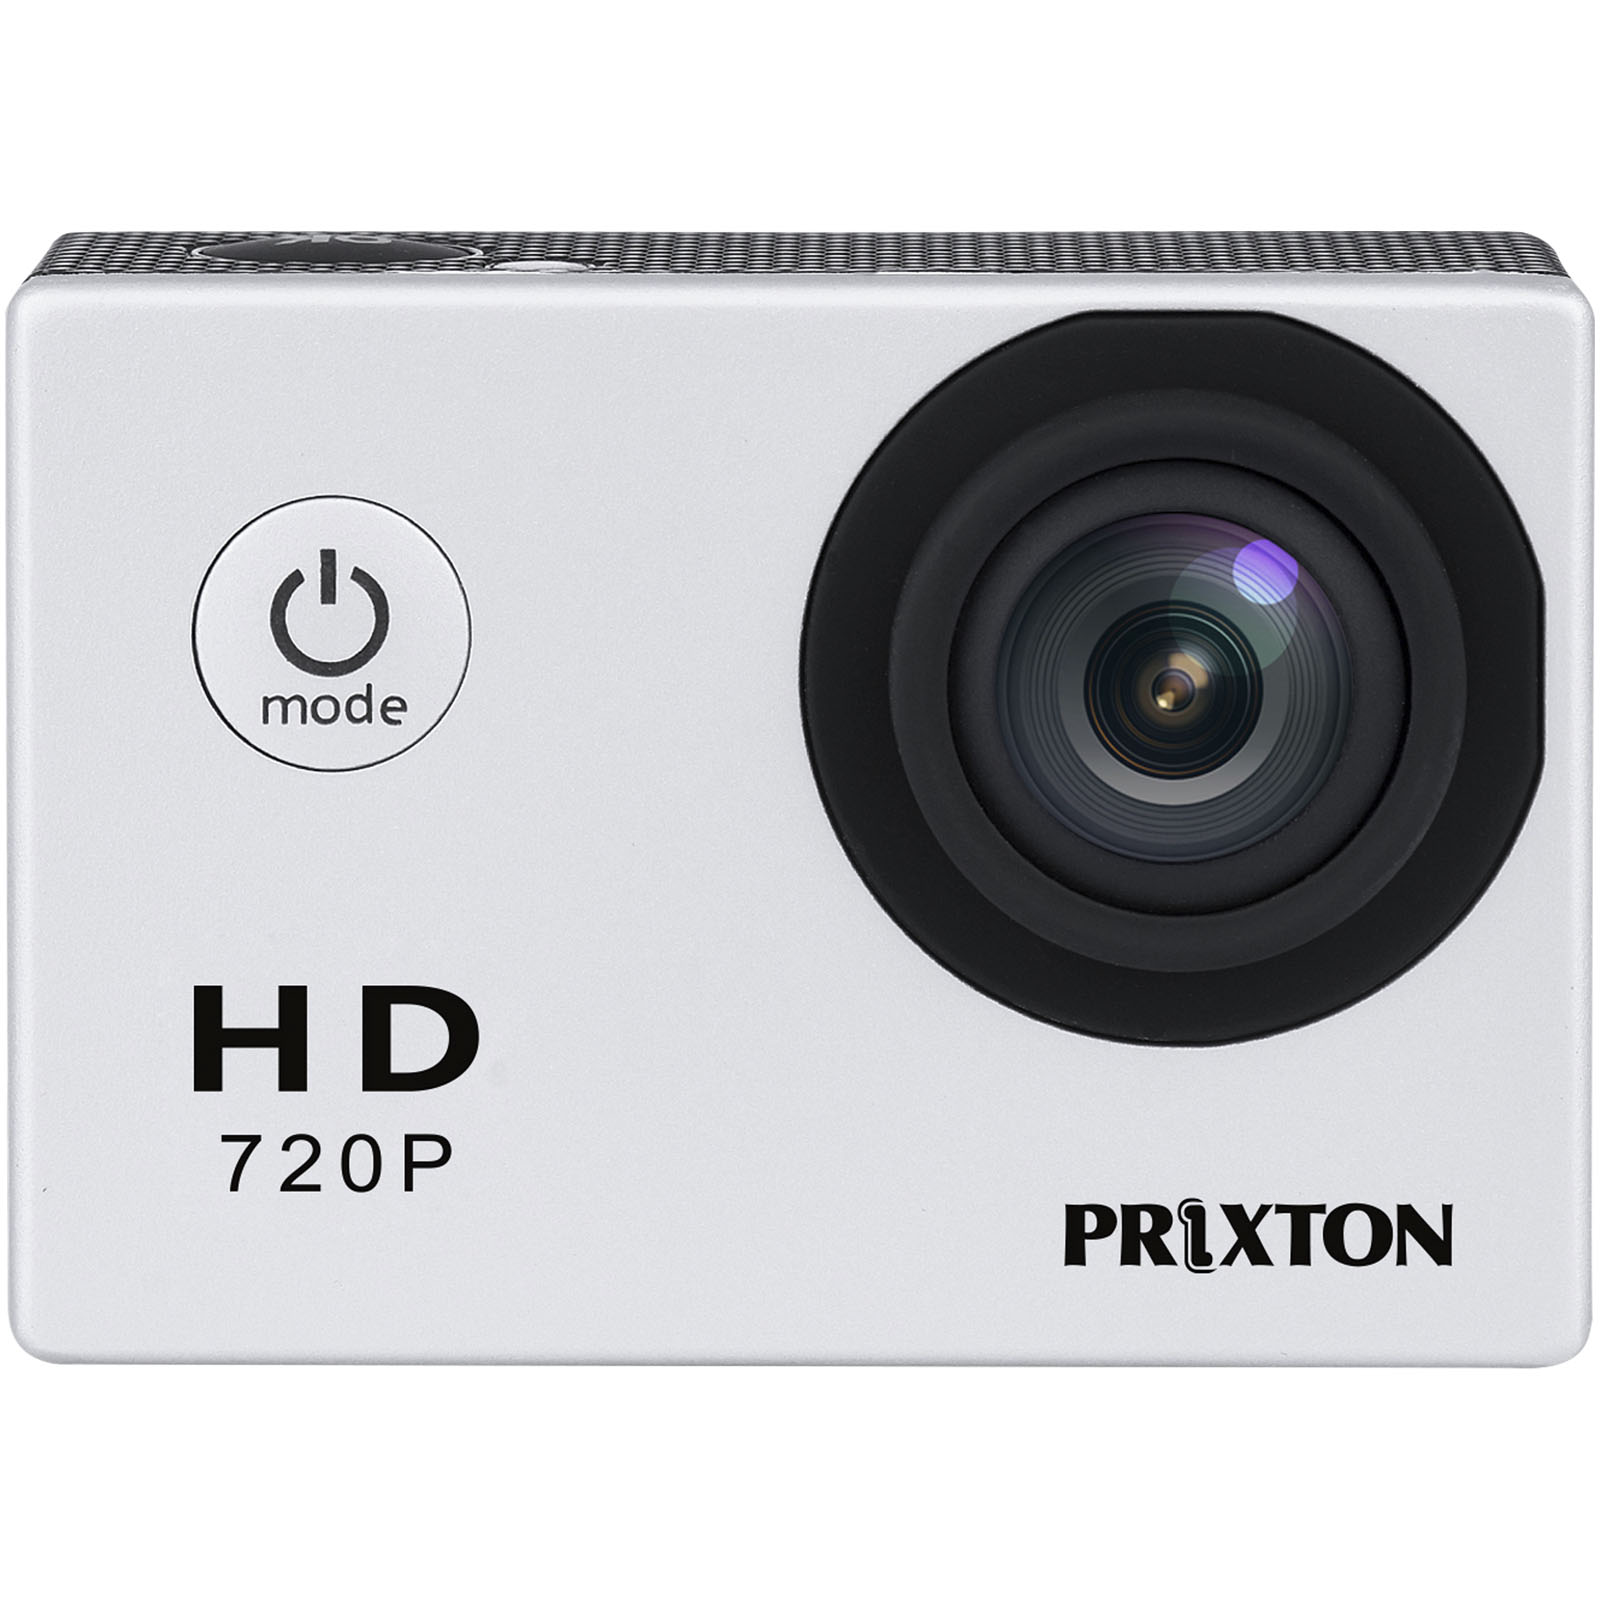 Advertising Cameras - Prixton DV609 Action Camera - 2